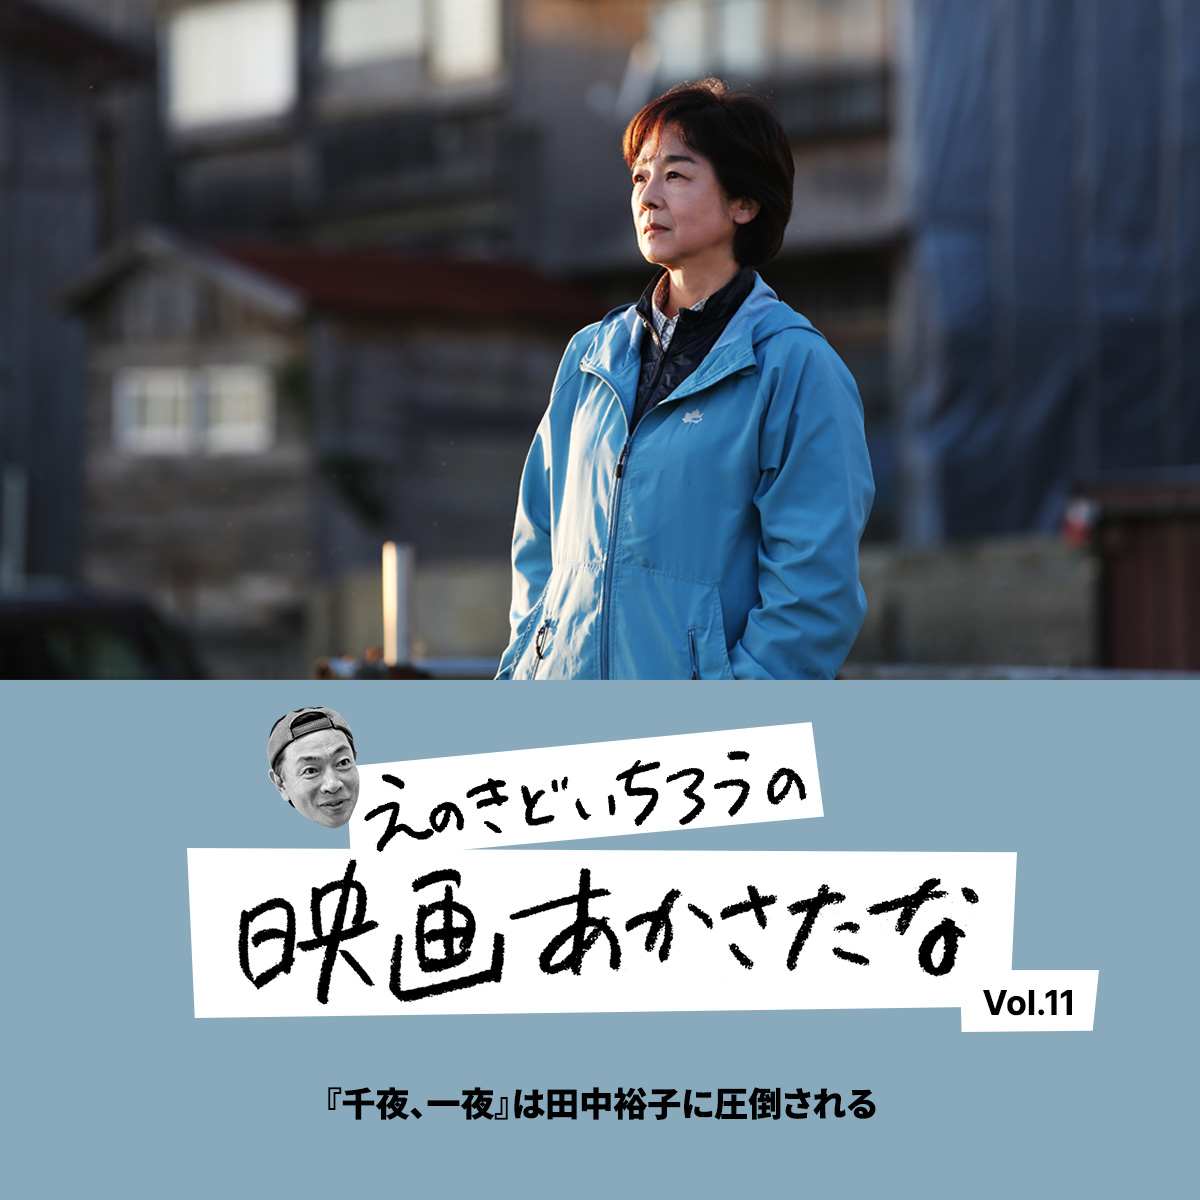 『千夜、一夜』は田中裕子に圧倒される【えのきどいちろうの映画あかさたな Vol.11】